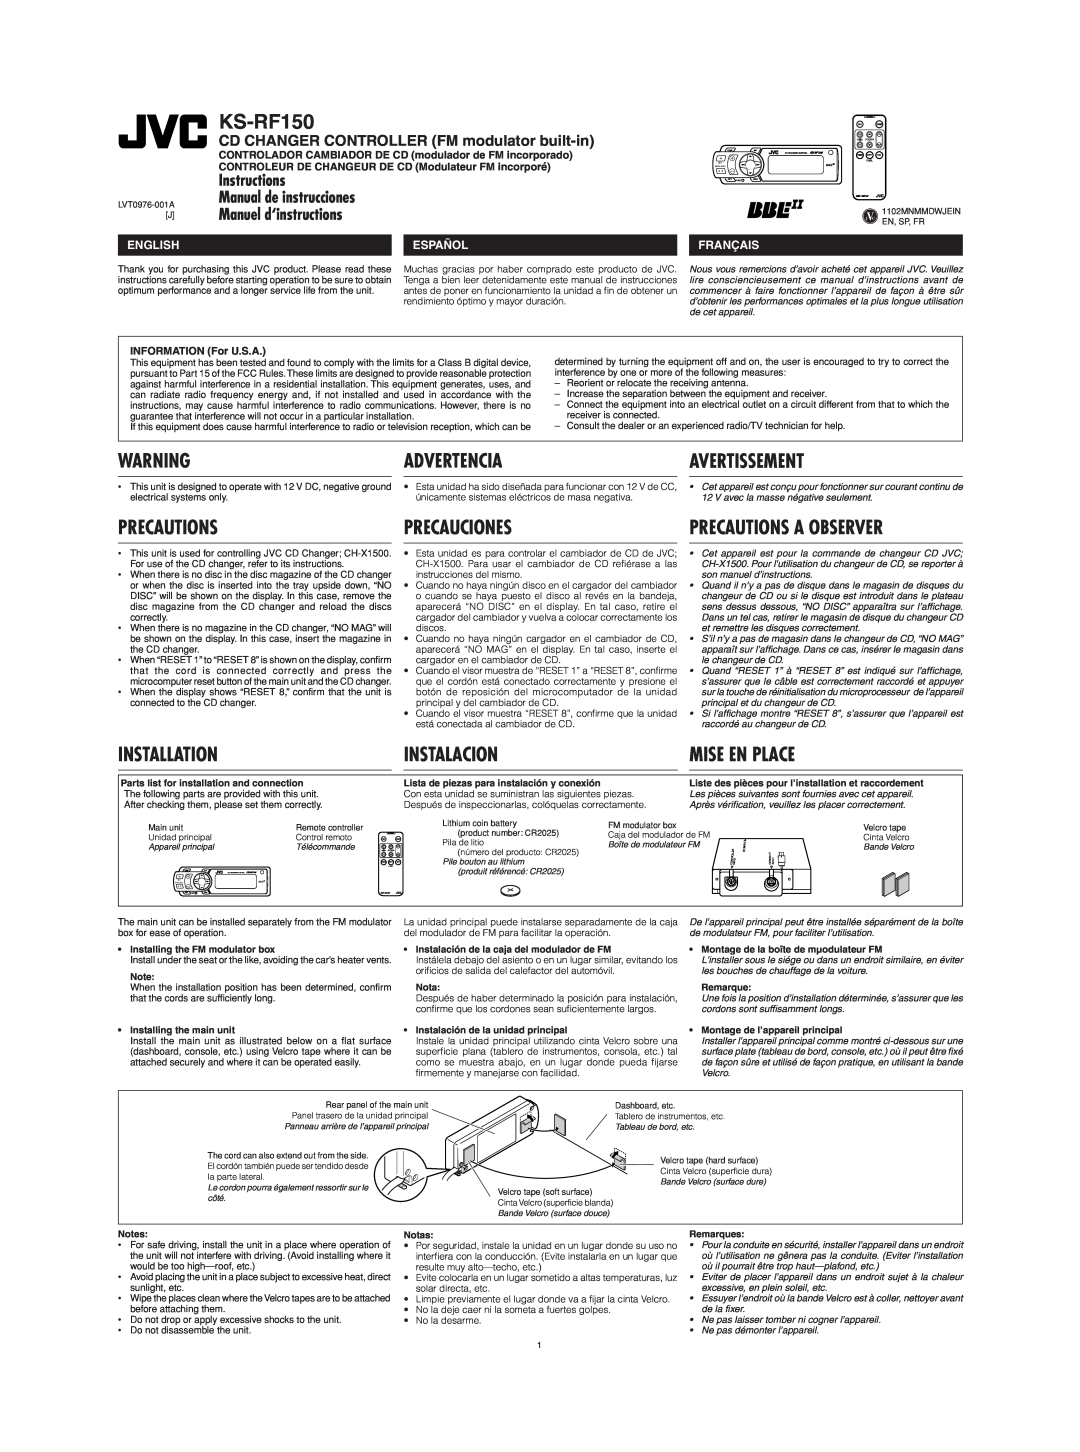 JVC CH-X1500 KS-RF150, Avertissement, Manual de instrucciones, Manuel d‘instructions, Precautions A Observer, Advertencia 